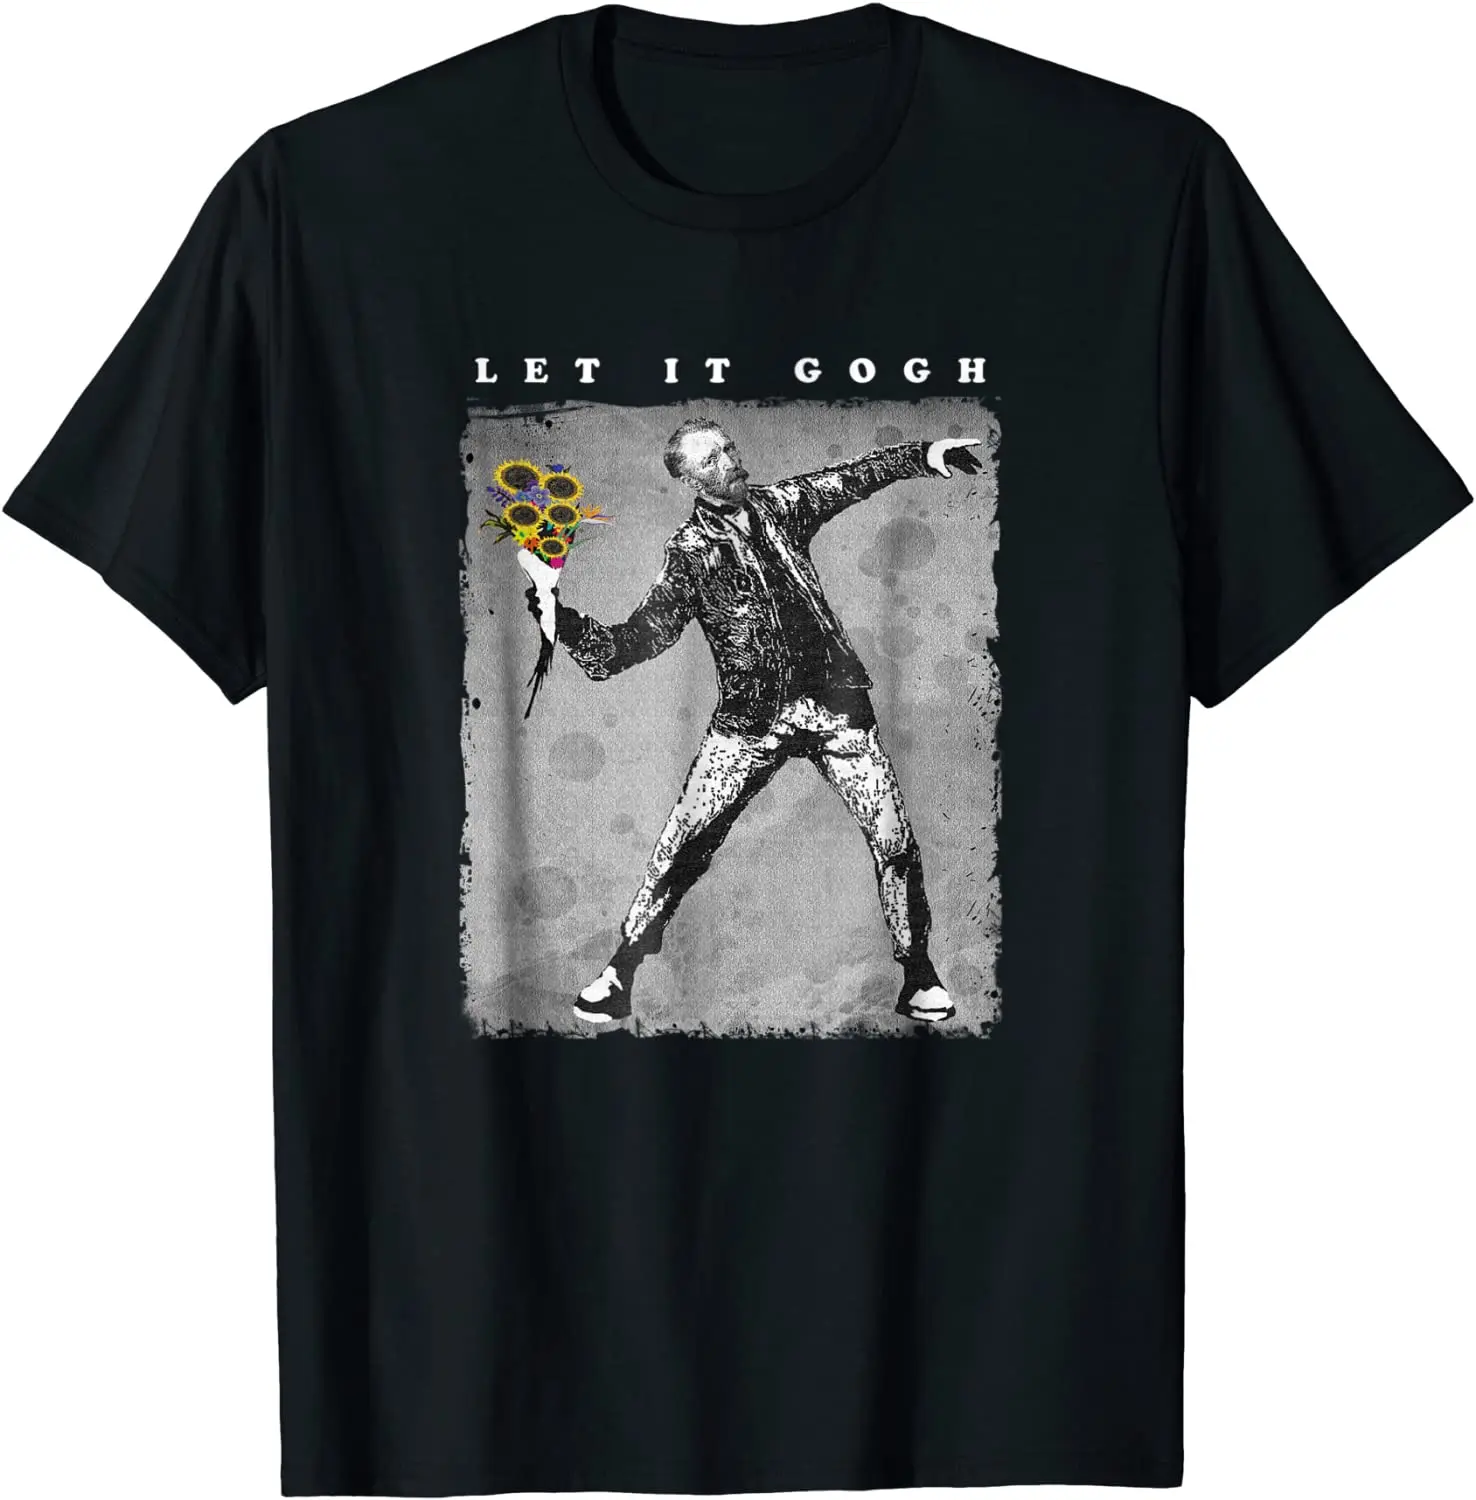 

Футболка Let It Gogh-графическая футболка Ван Гога подарок хлопковые футболки для мужчин Забавные топы футболки купоны уникальные